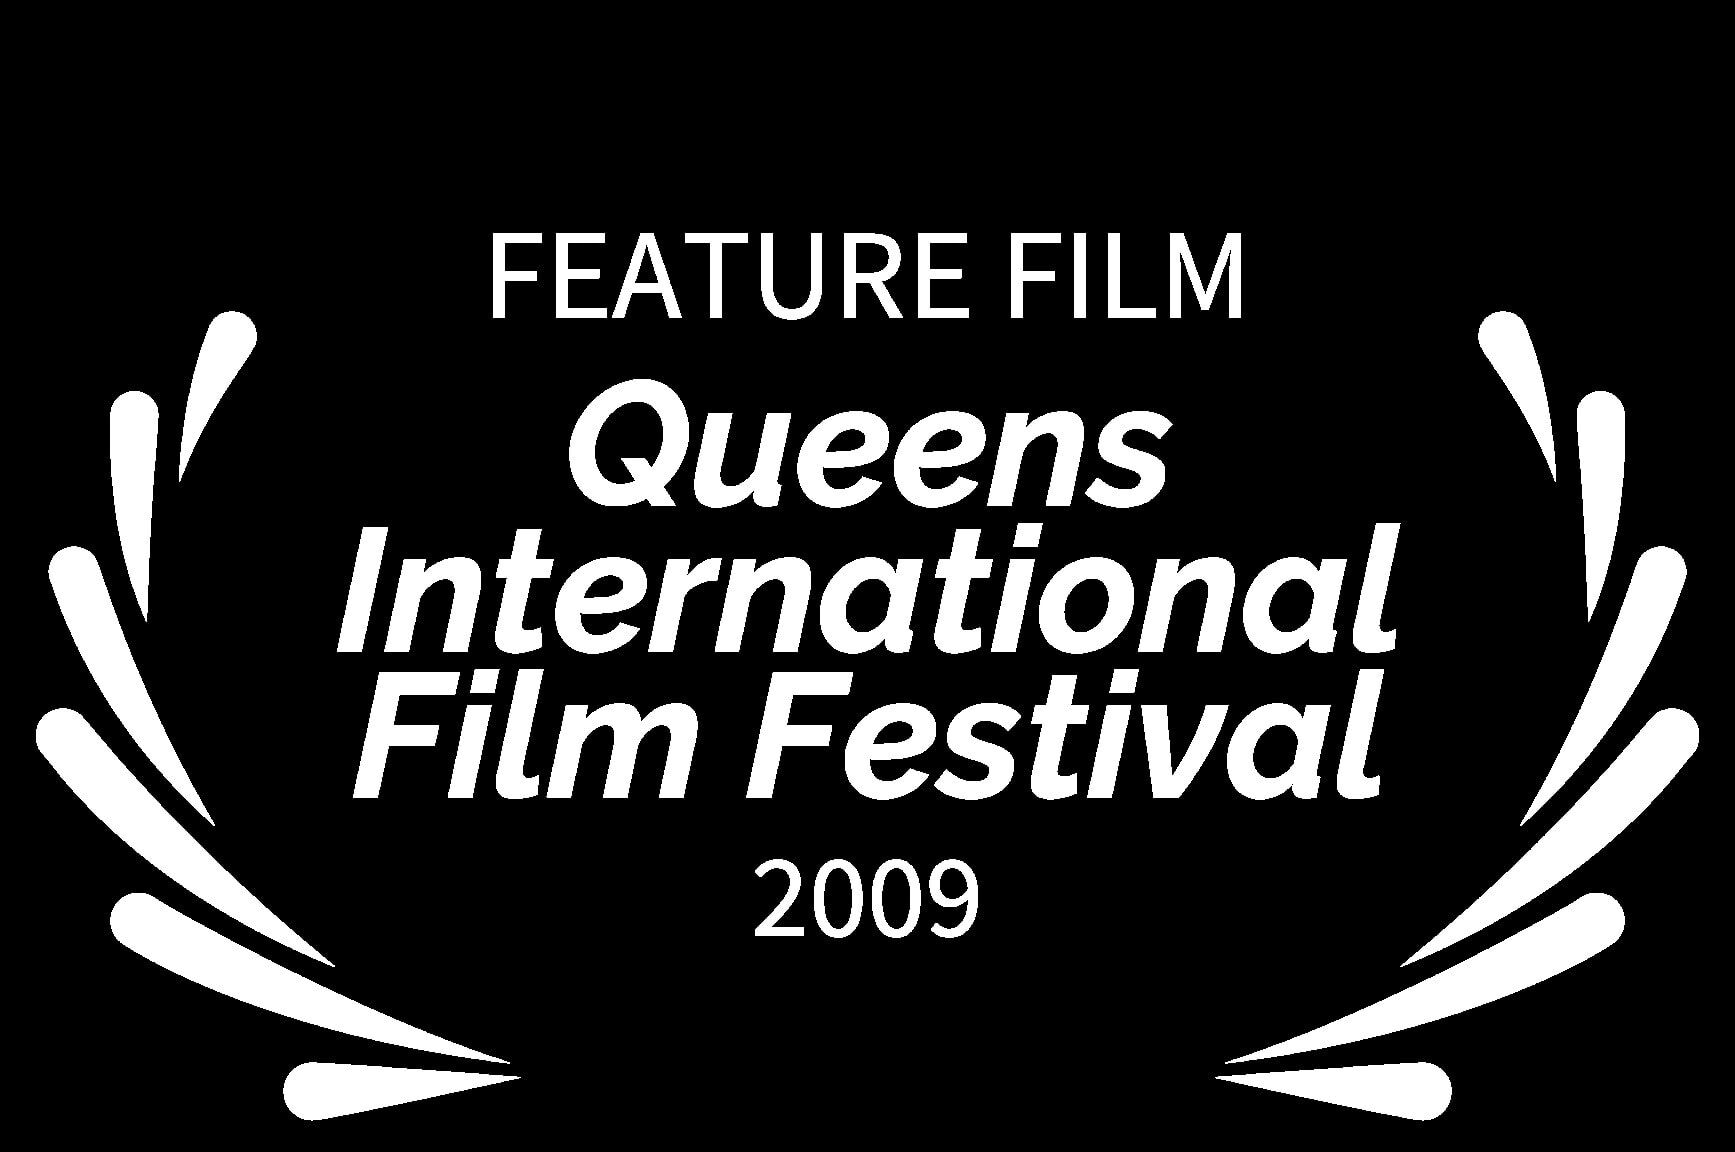 FEATURE FILM - Queens International Film Festival - 2009 - Cryptopticon